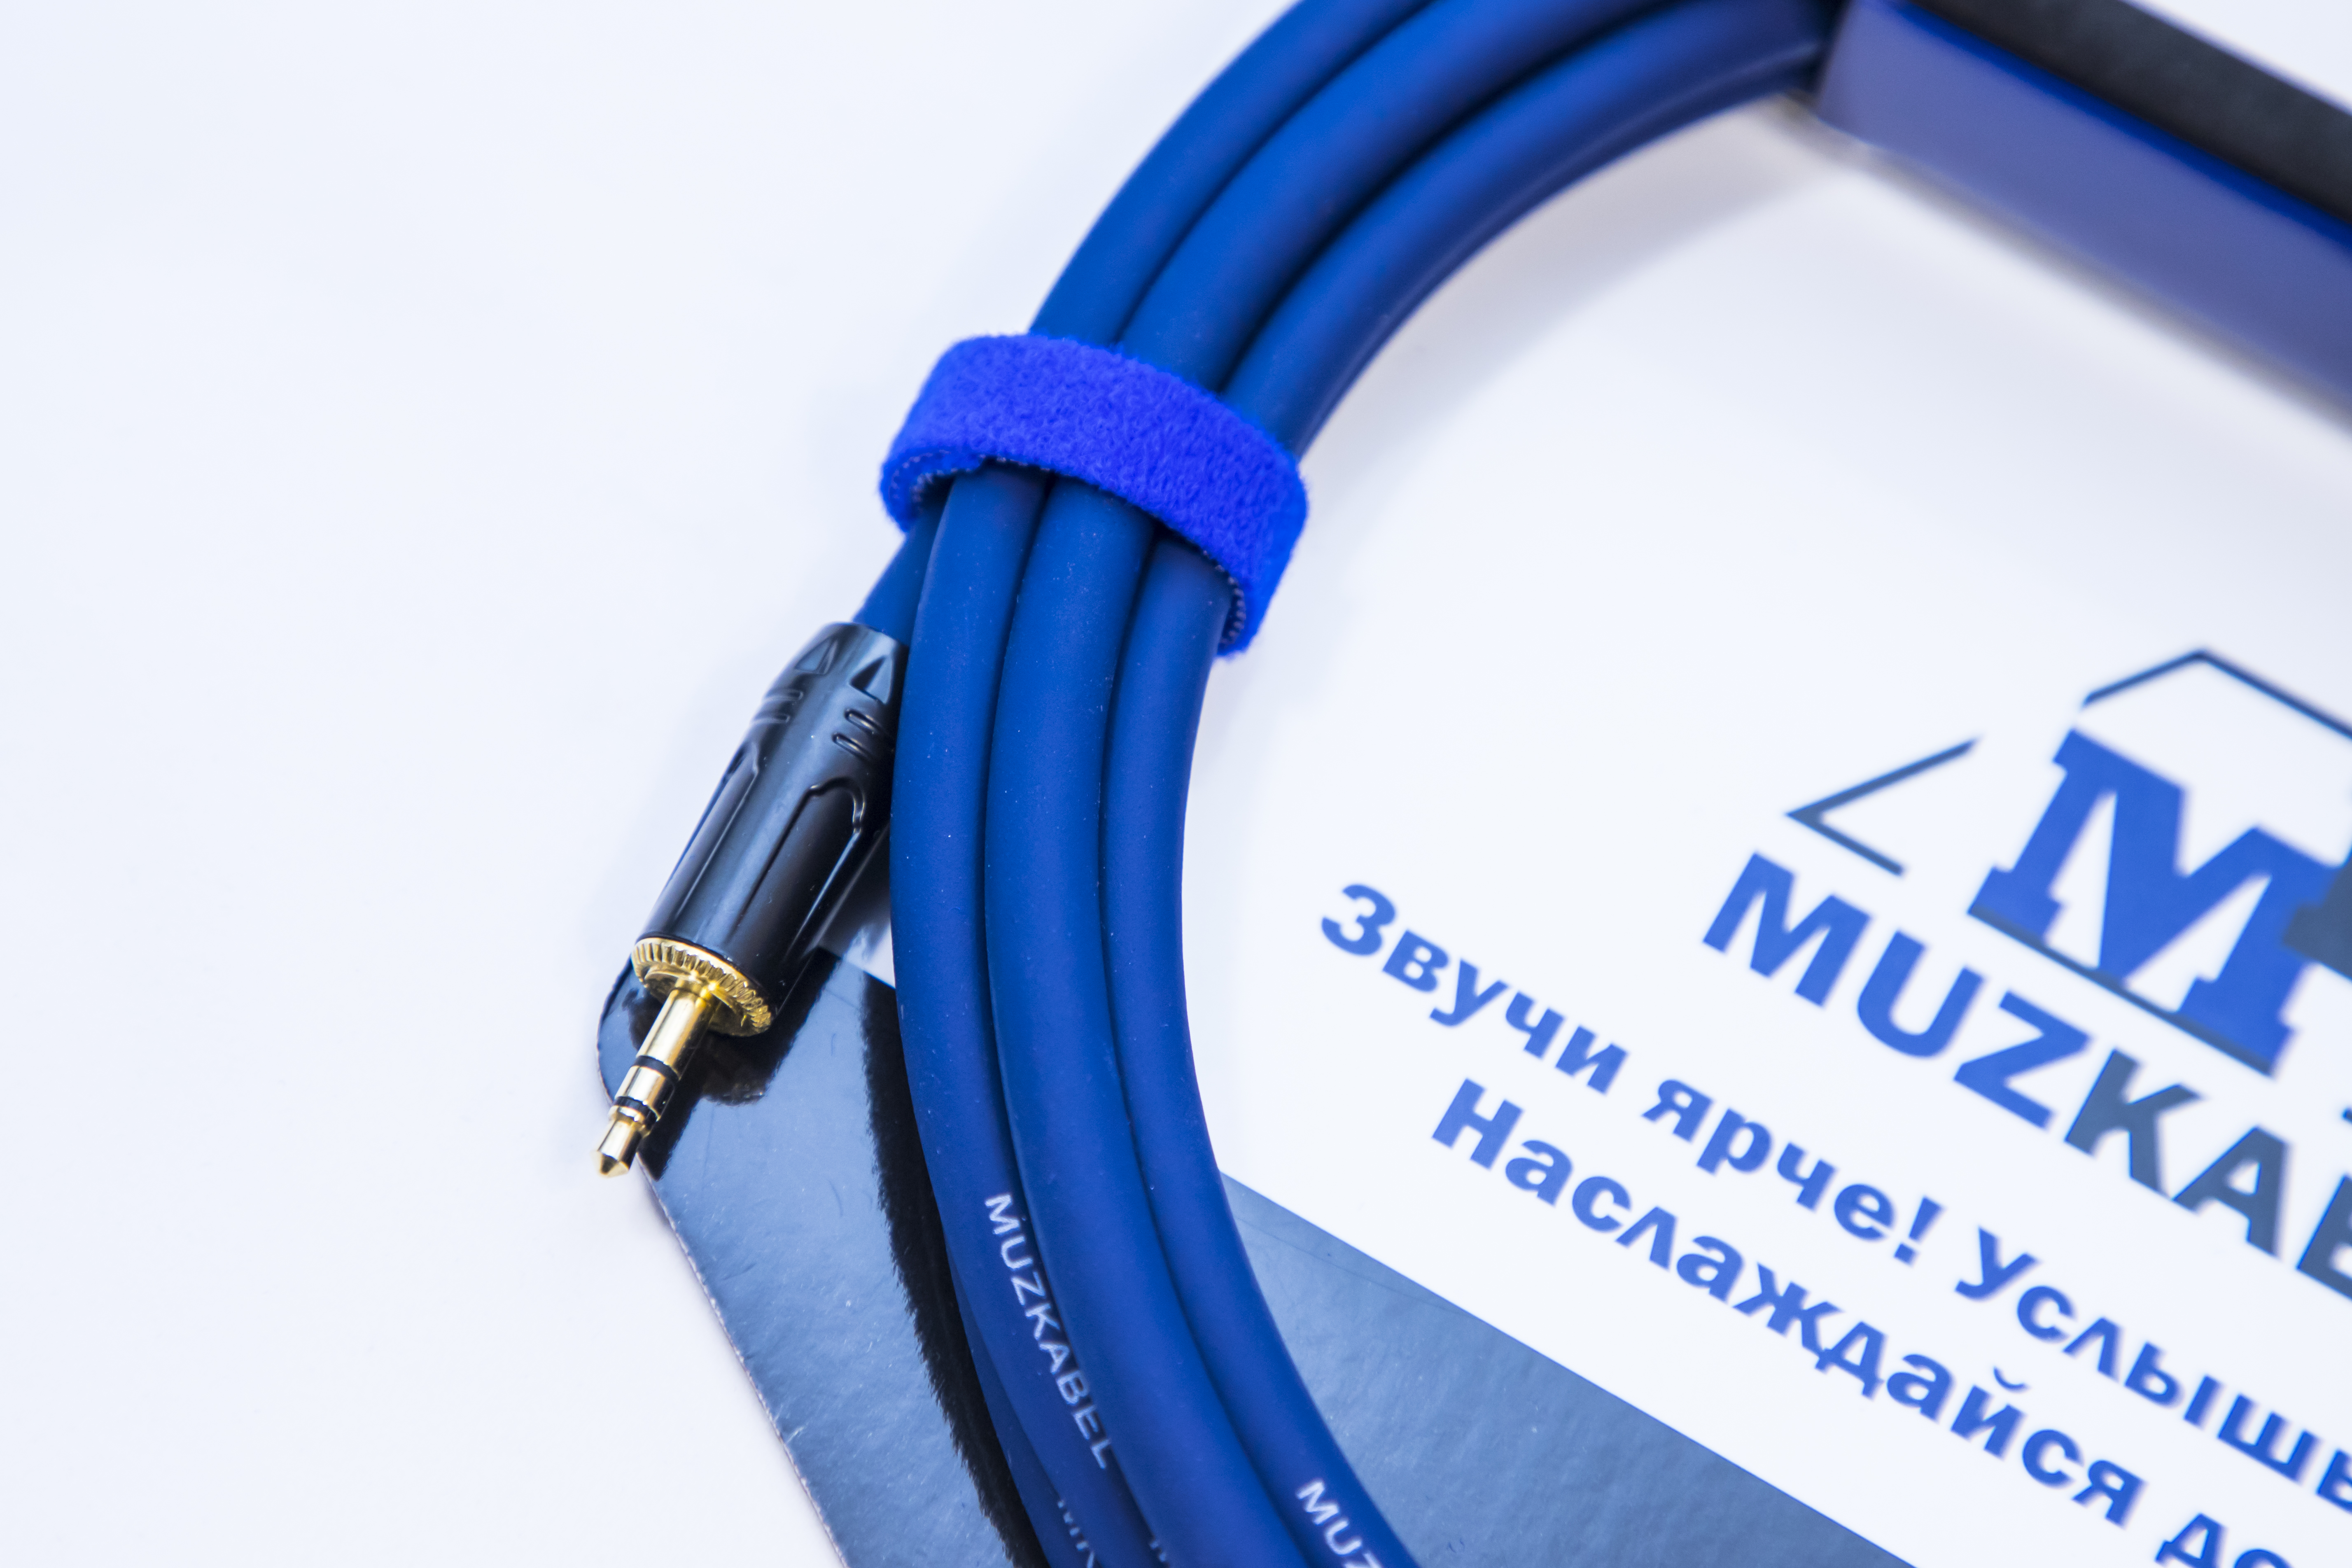 Аудио кабель MUZKABEL MFXMK1S - 15 метров, MINI JACK (3.5) - MINI JACK (3.5)